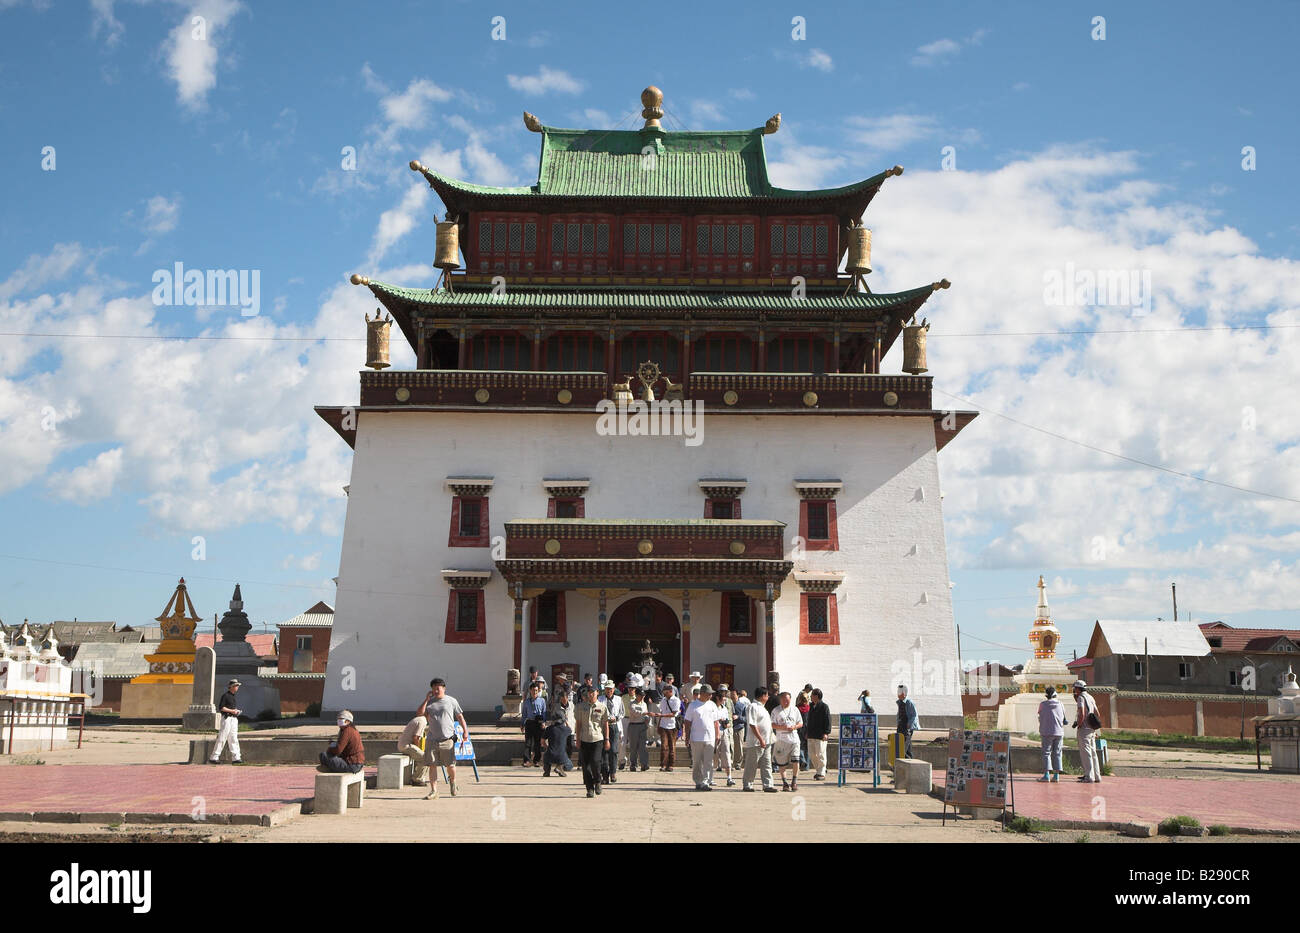 Monastère Gandantegchinlen Khiid à Oulan-bator Mongolie Banque D'Images